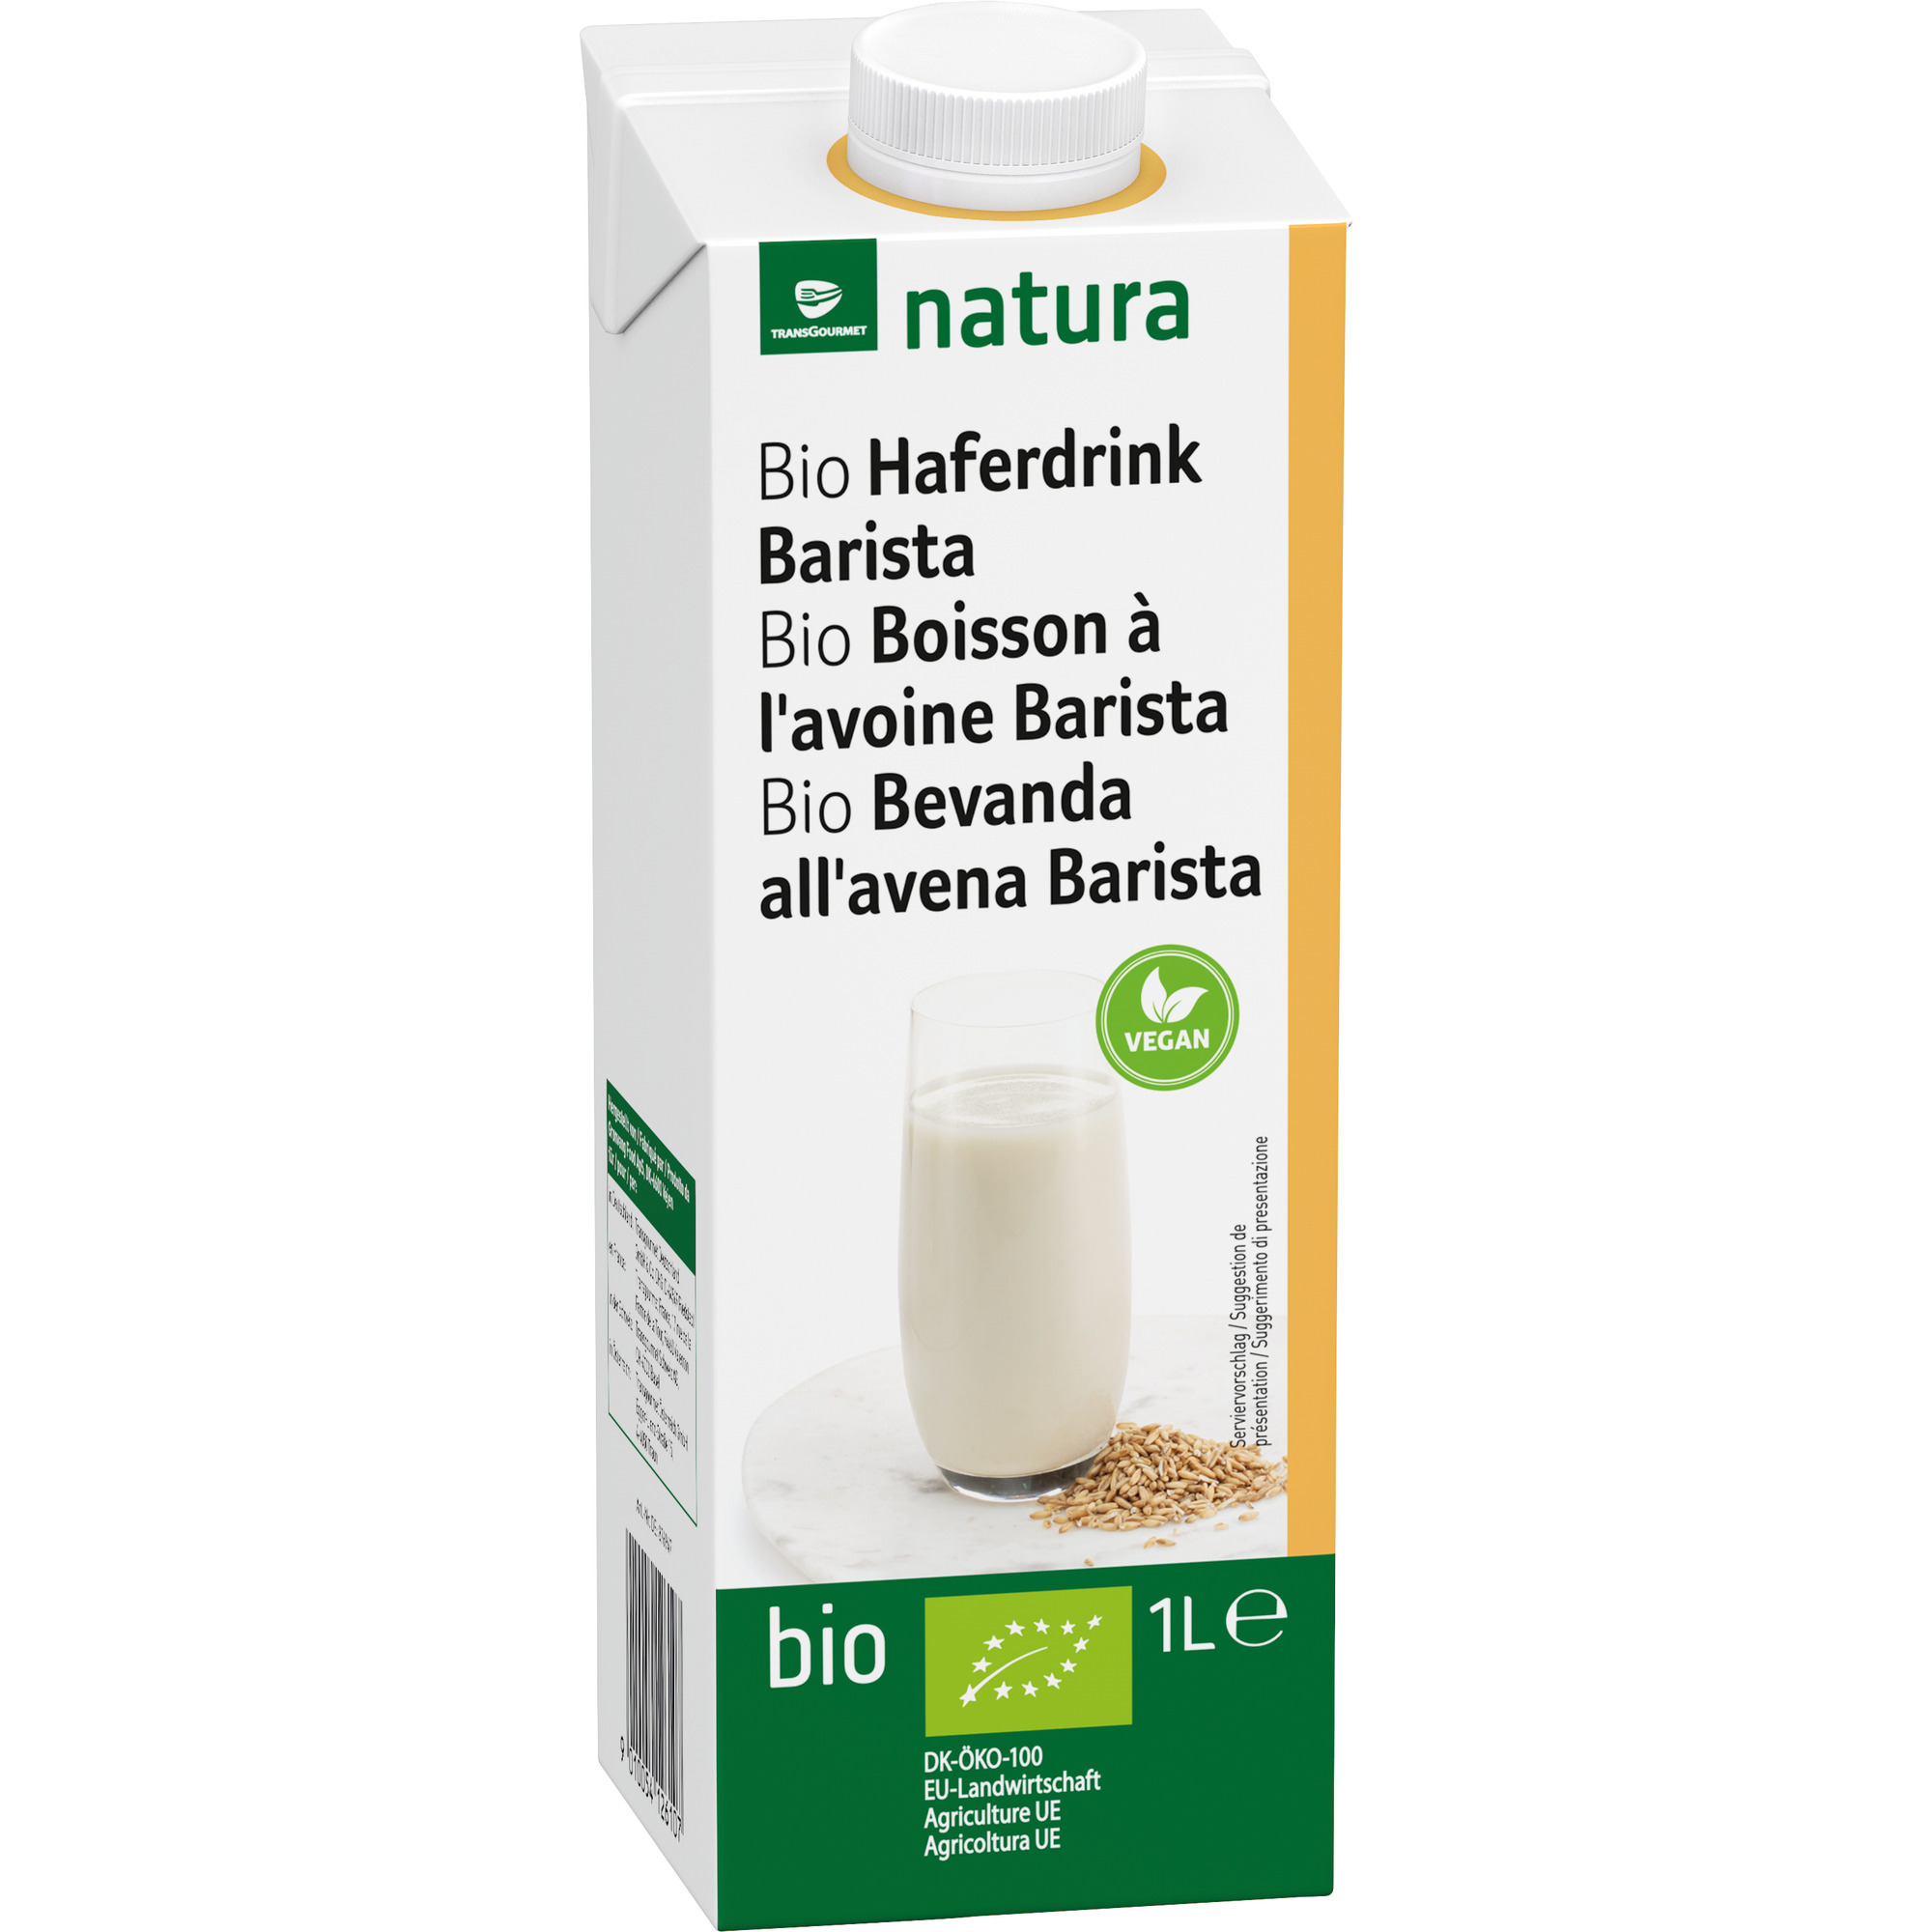 Natura Bio Haferdrink Barista 1l